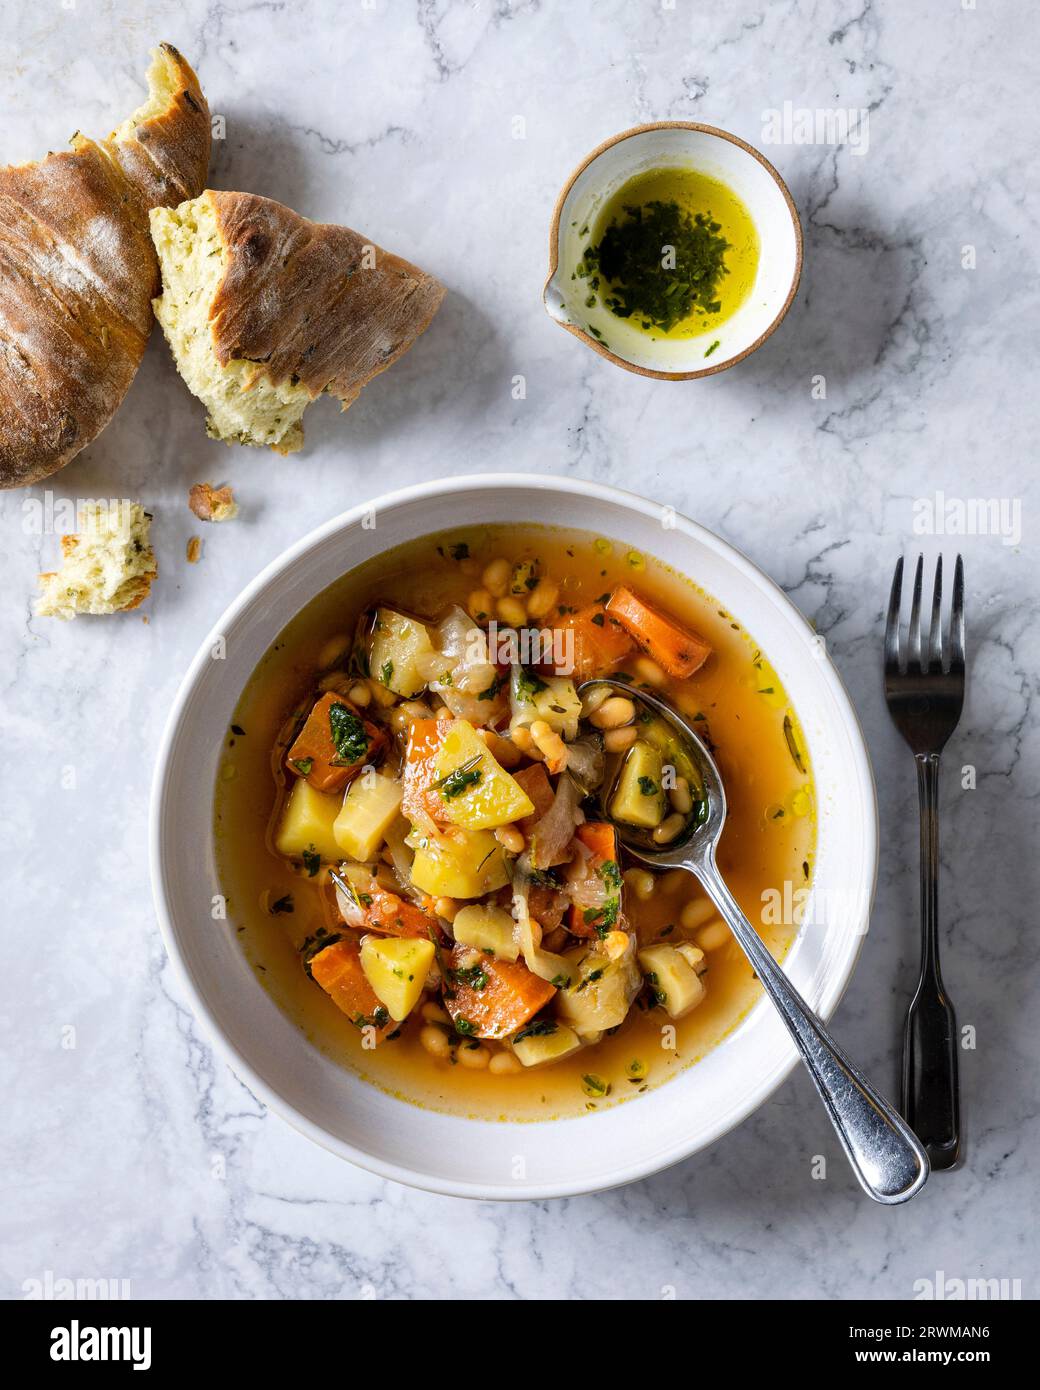 l'image de haut en bas présente une soupe végétarienne visuellement agréable et saine. La soupe comprend des morceaux de pommes de terre, oignons, carottes, haricots blancs, navet Banque D'Images